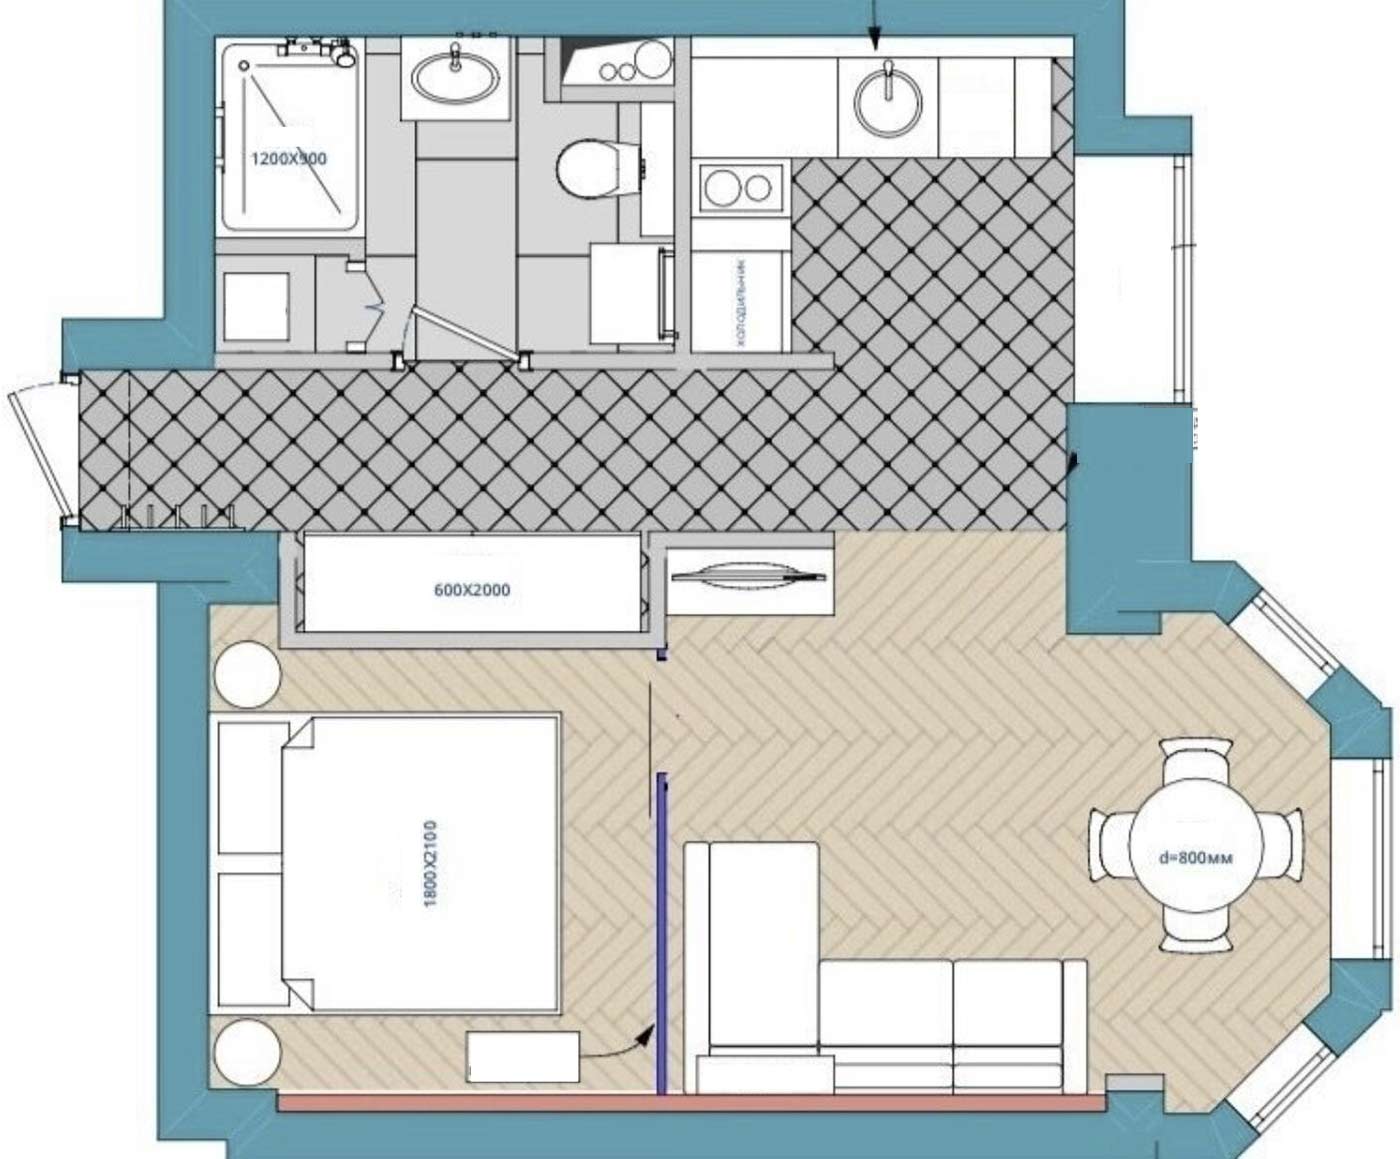 Stílusos kis lakás egyszerű anyagokkal, IKEA bútorokkal, zöld konyhával, üvegfallal - 36m2